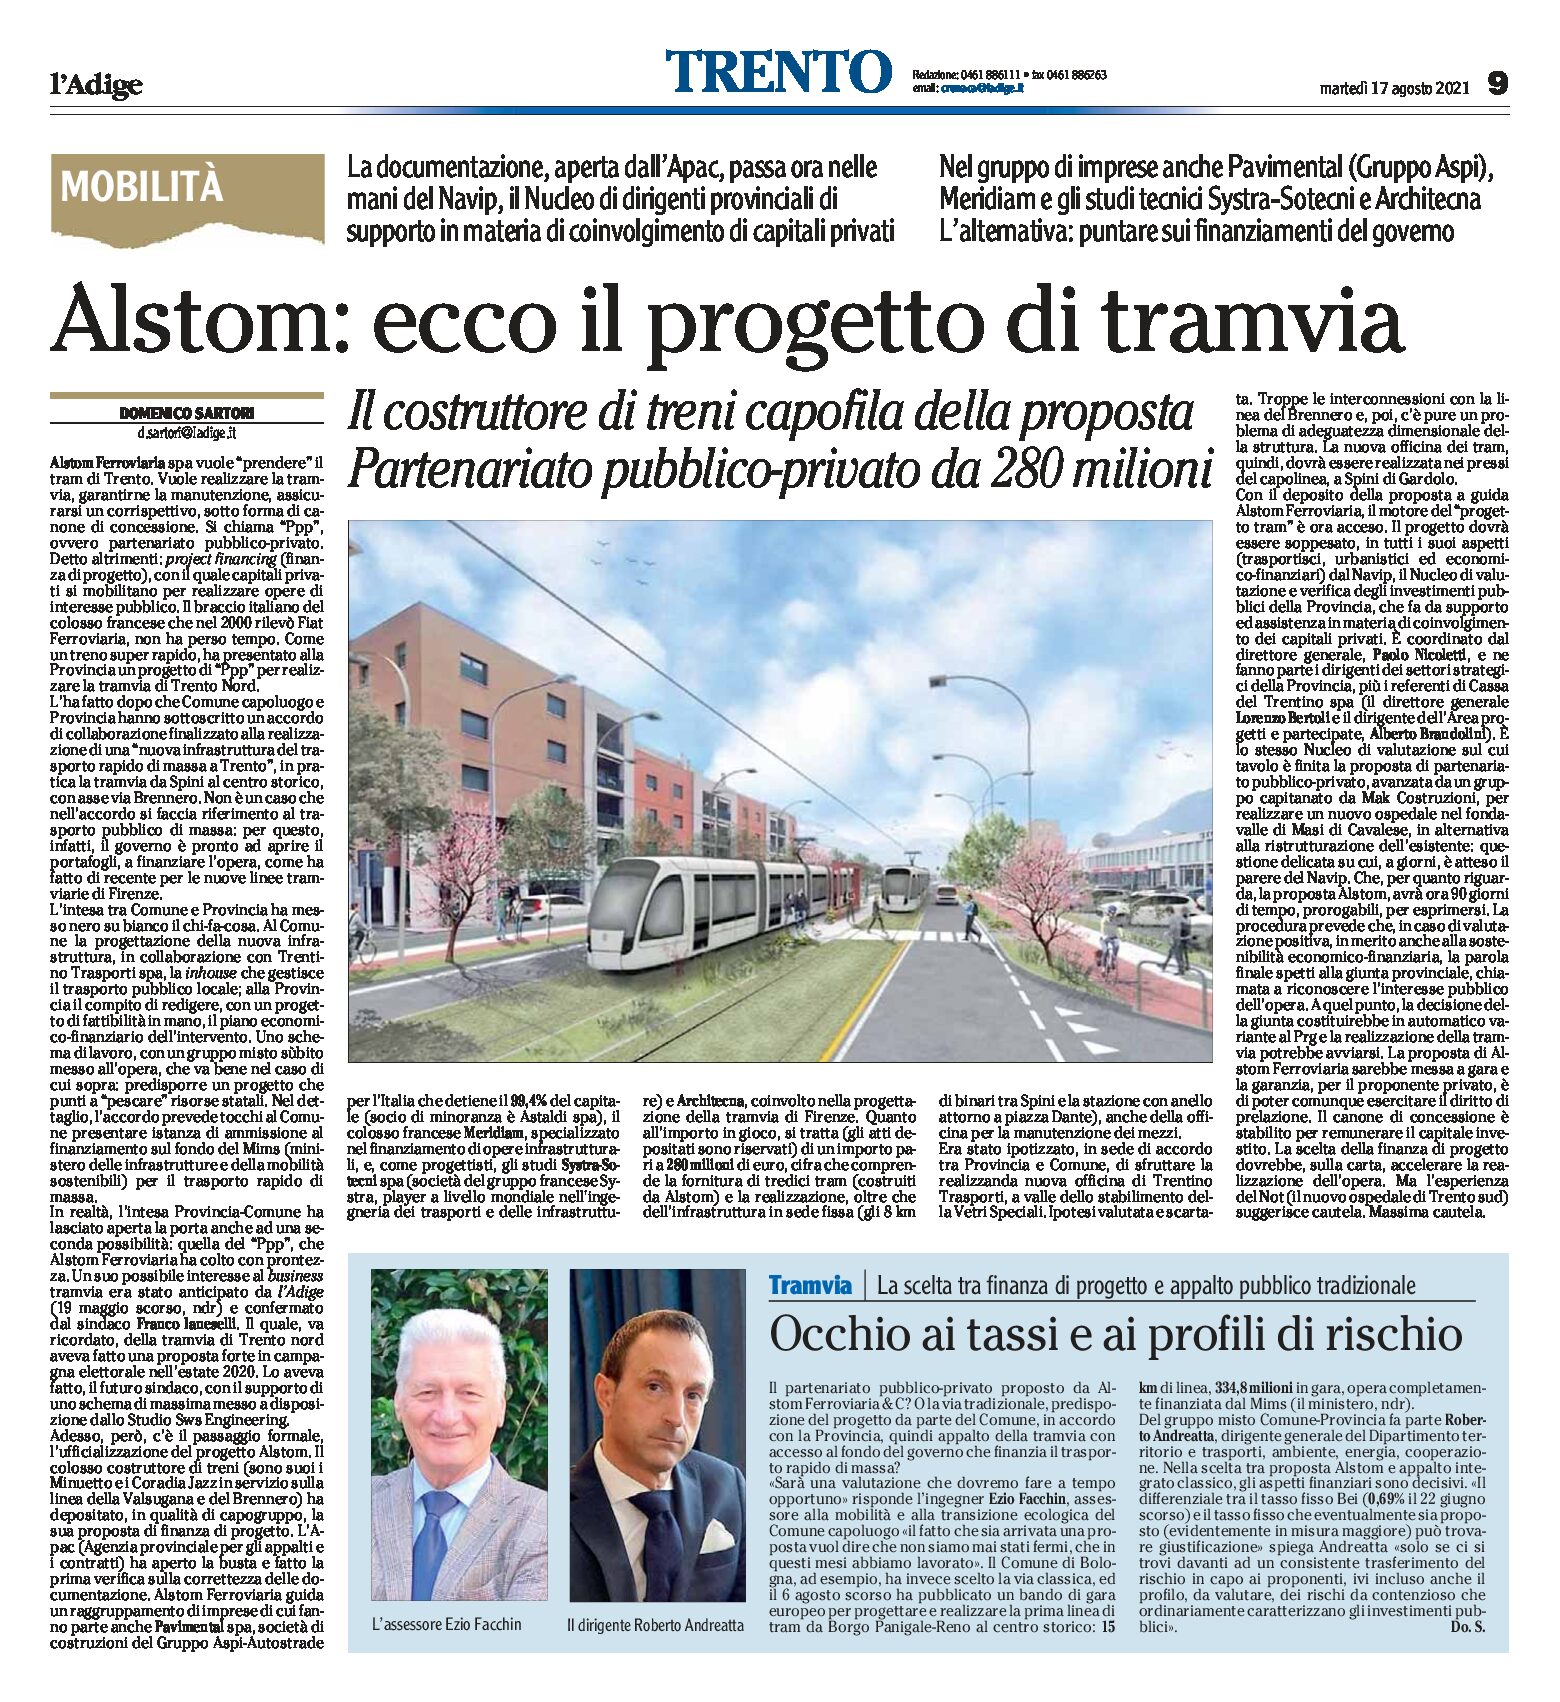 Trento, mobilità: Alstom, ecco il progetto di tramvia